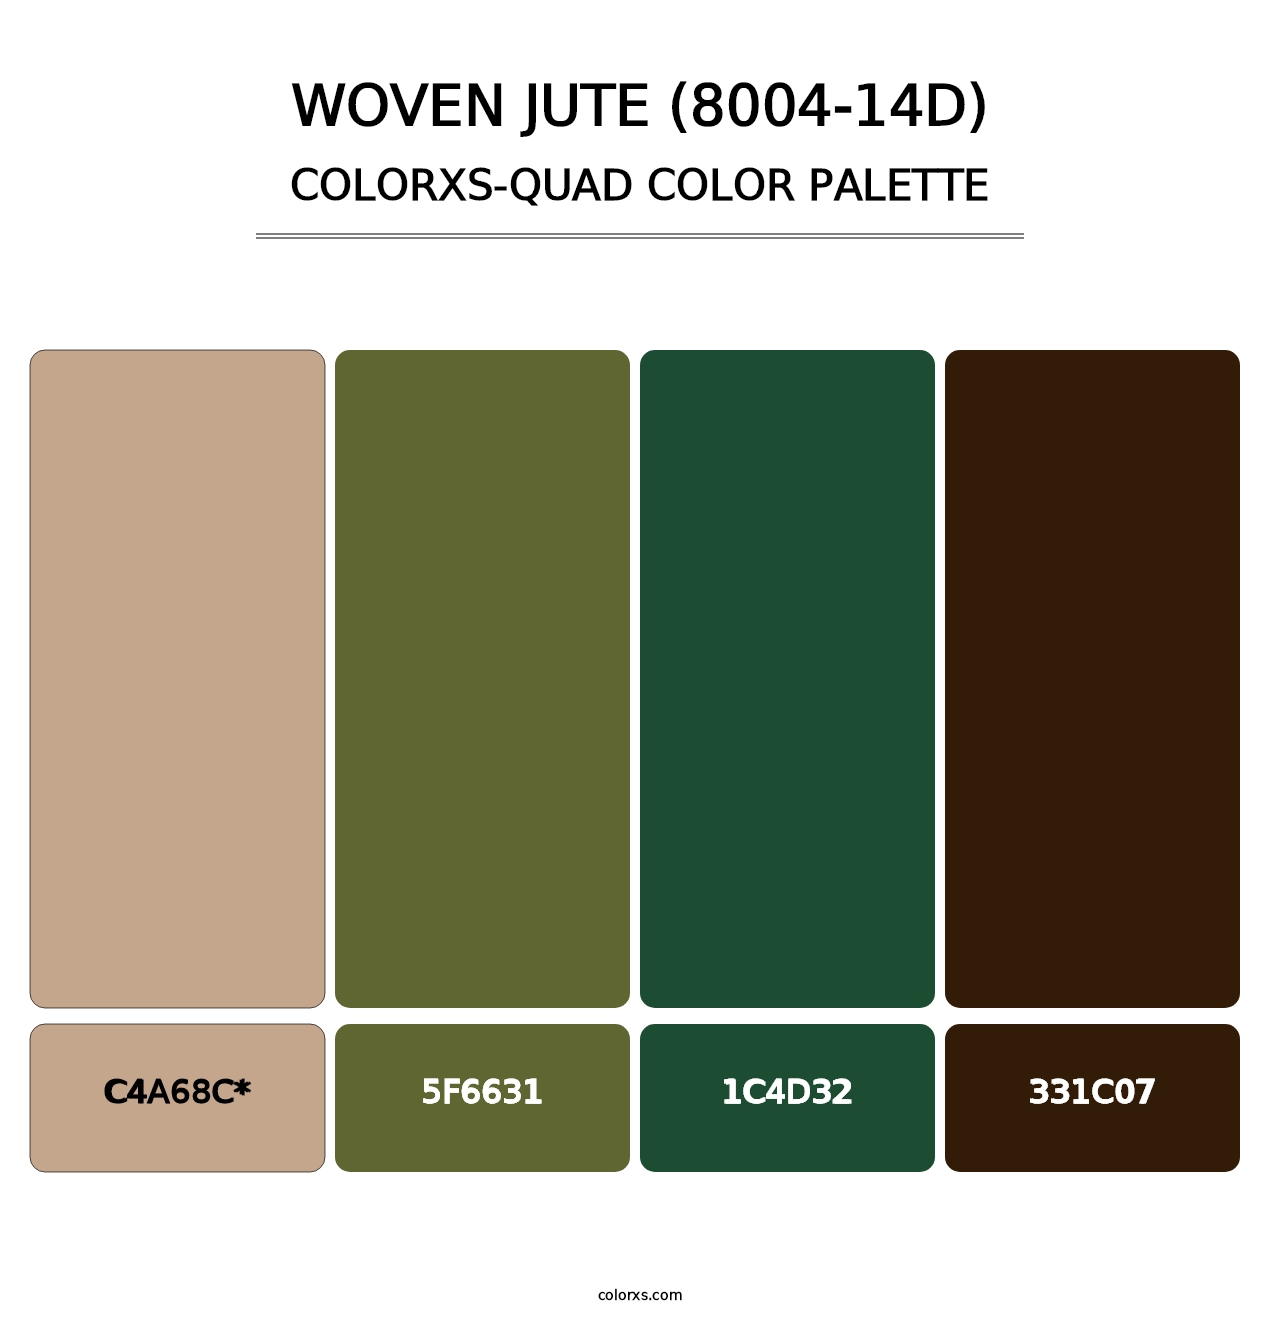 Woven Jute (8004-14D) - Colorxs Quad Palette